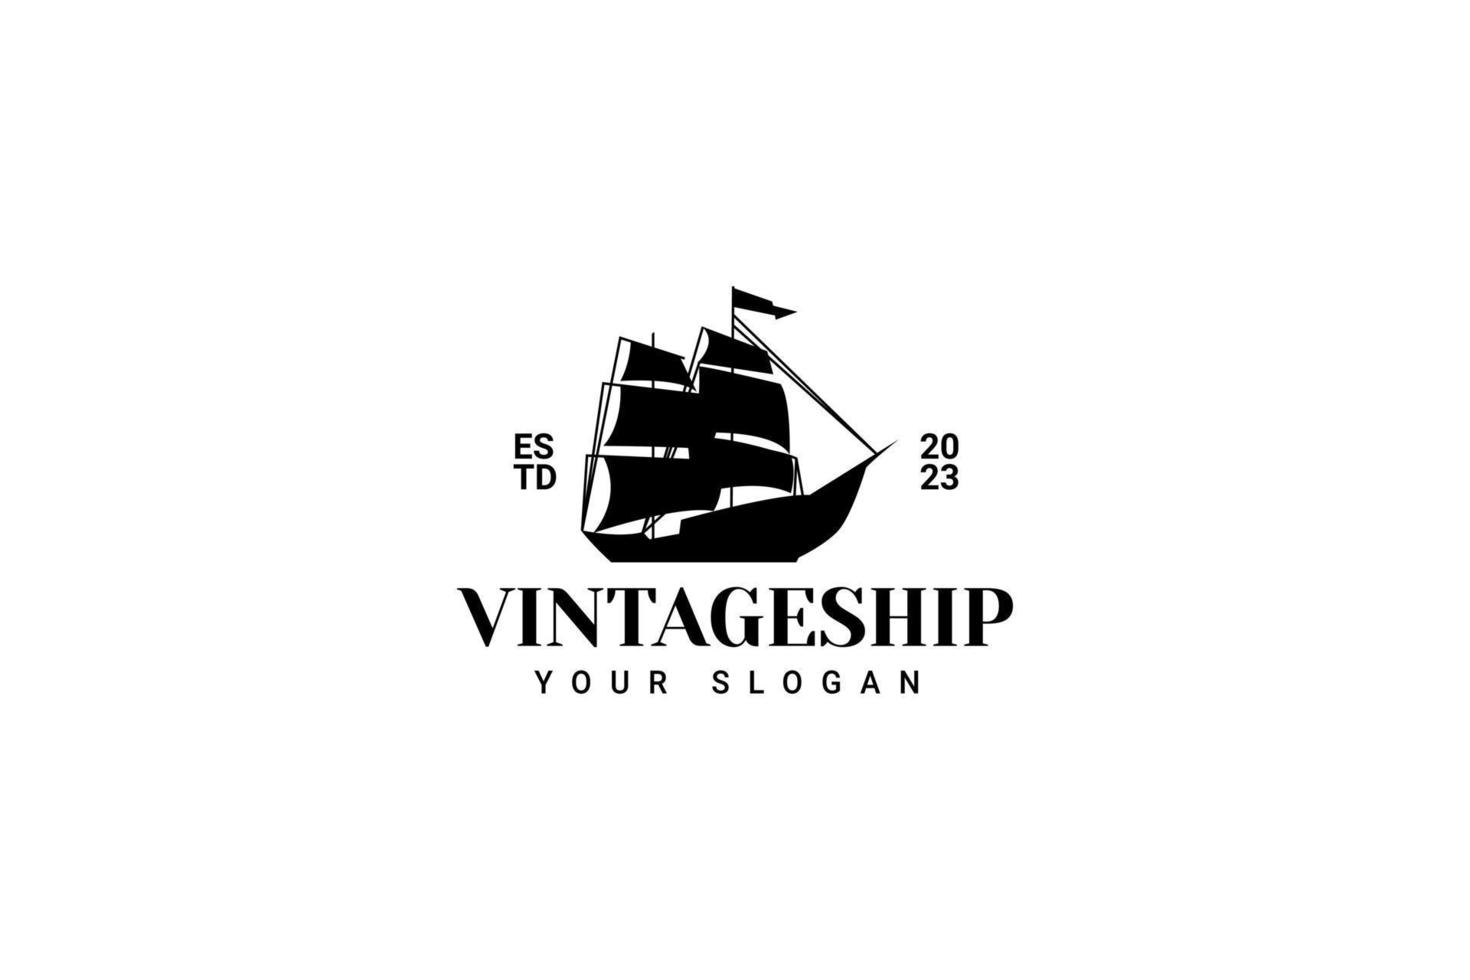 zeilschip vintage illustratie op logo badge vector